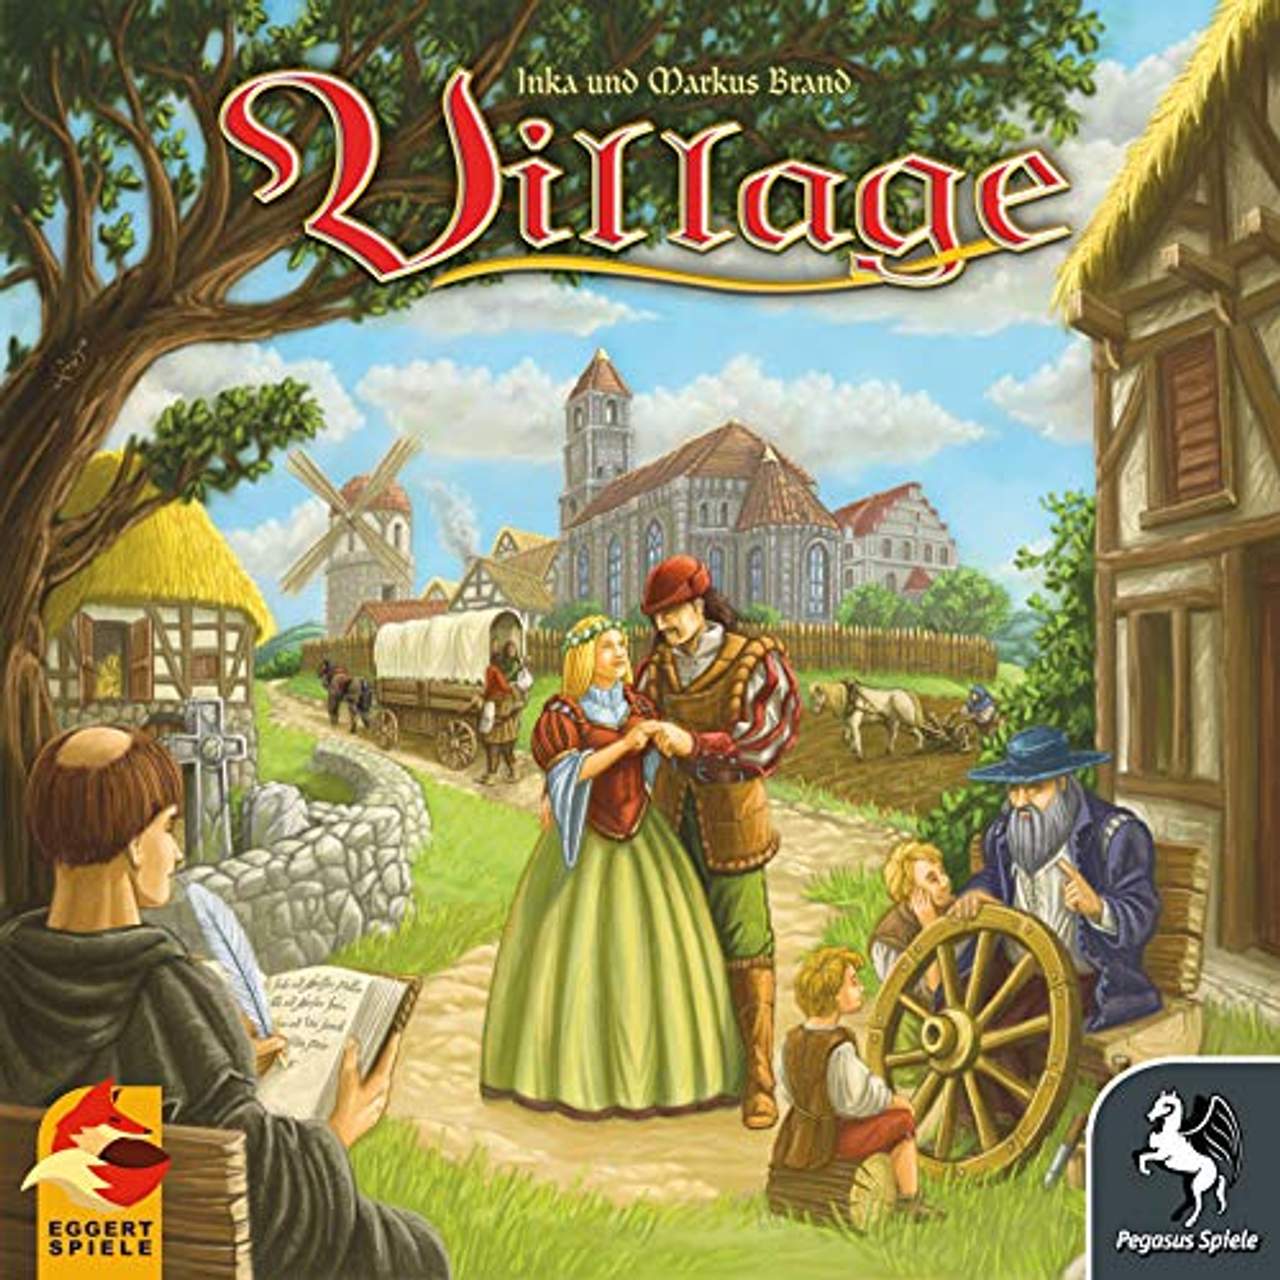 Village, Kennerspiel des Jahres 2012